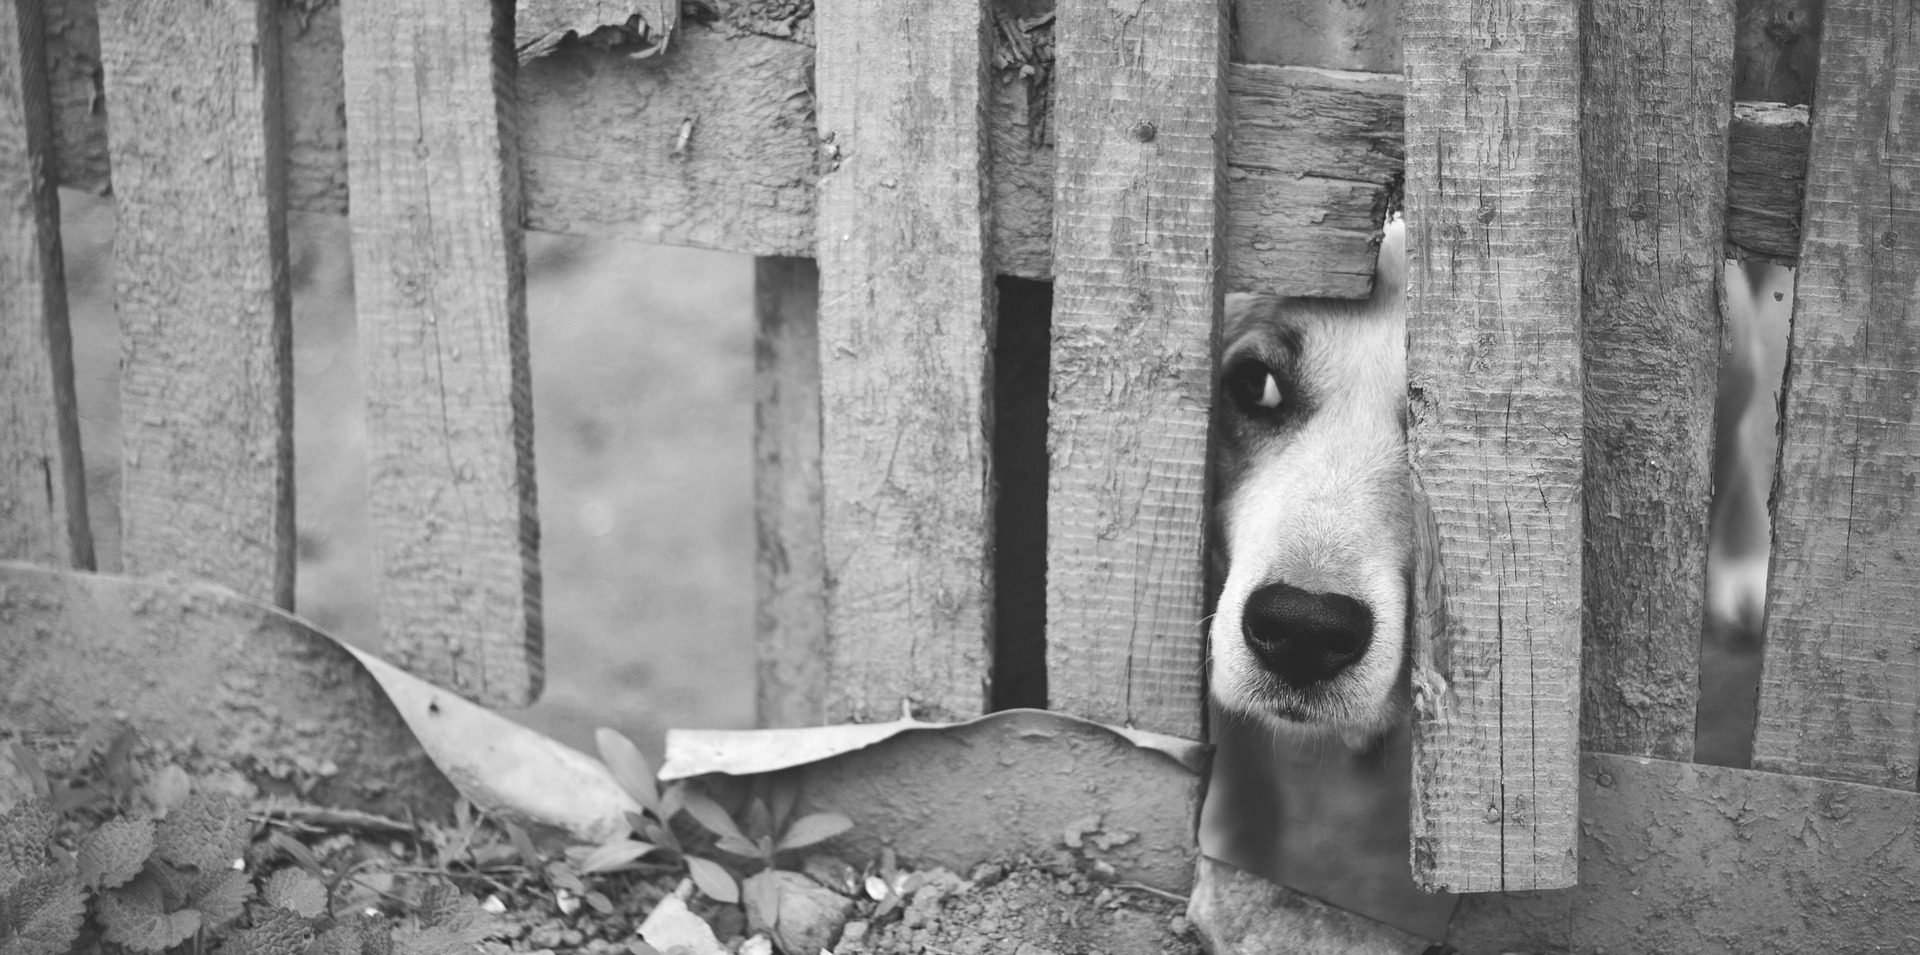 Kutyus kiles a kerítés nyílásán